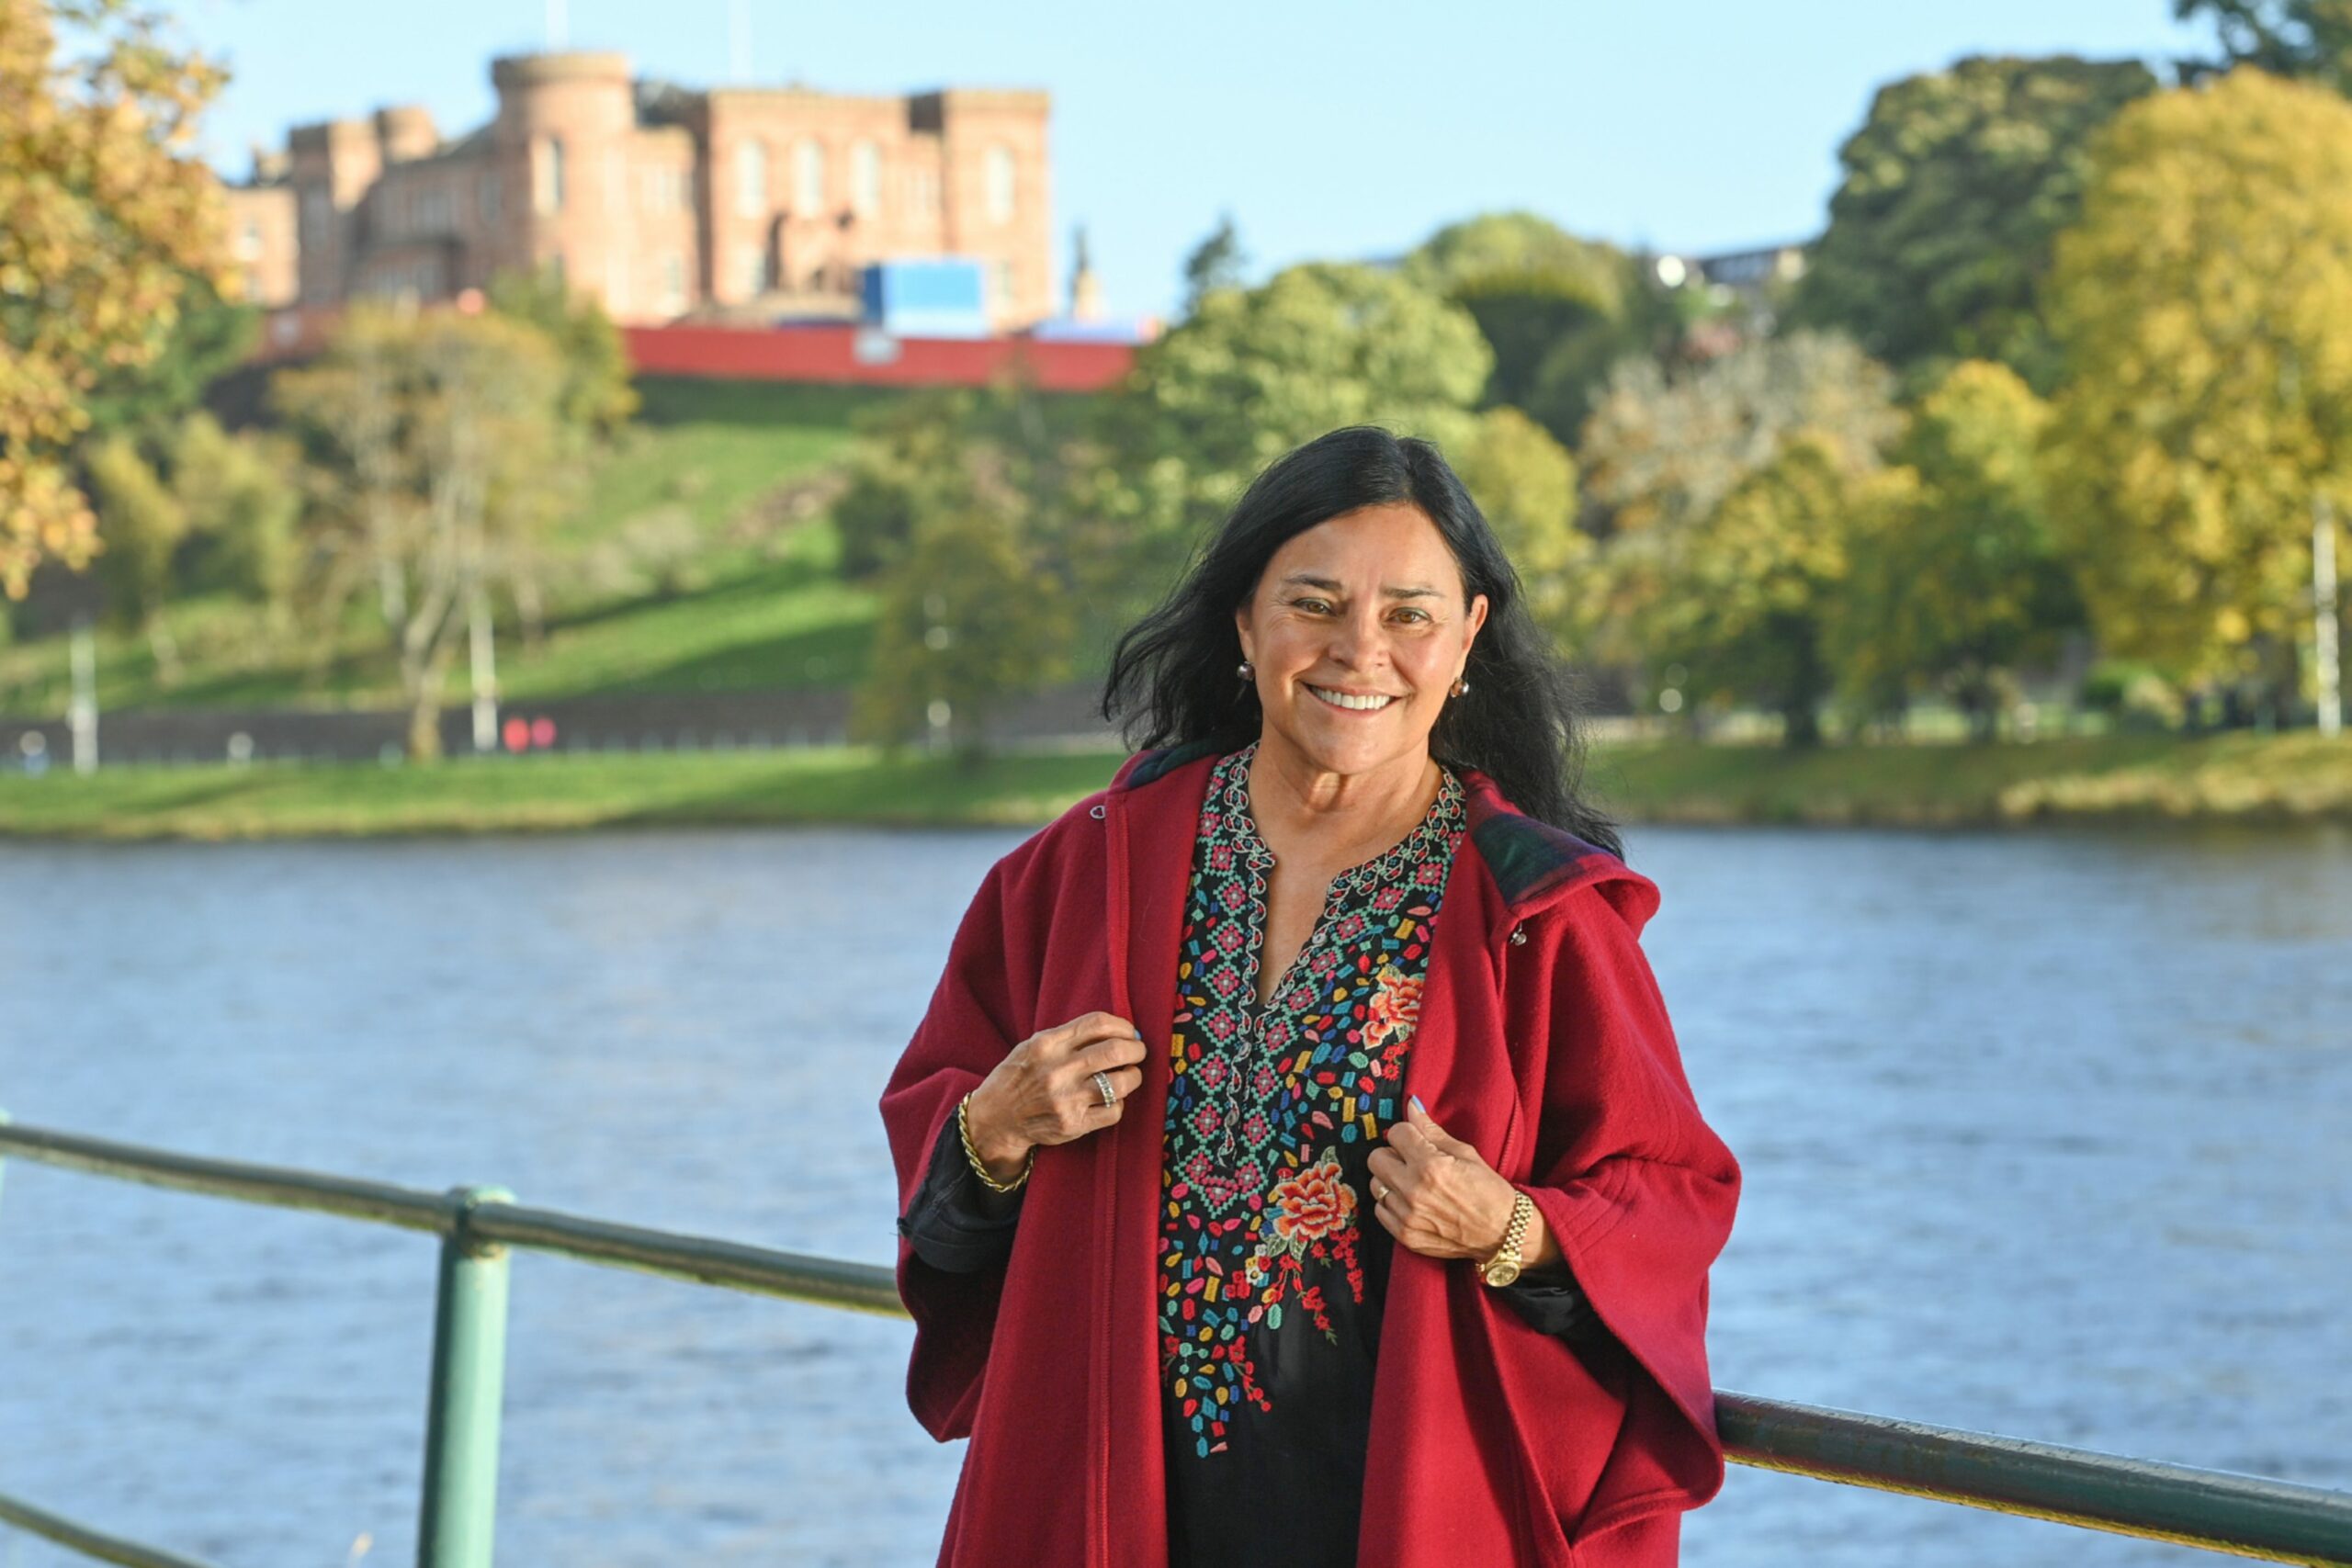 Outlander author Diana Gabaldon standing next to River Ness